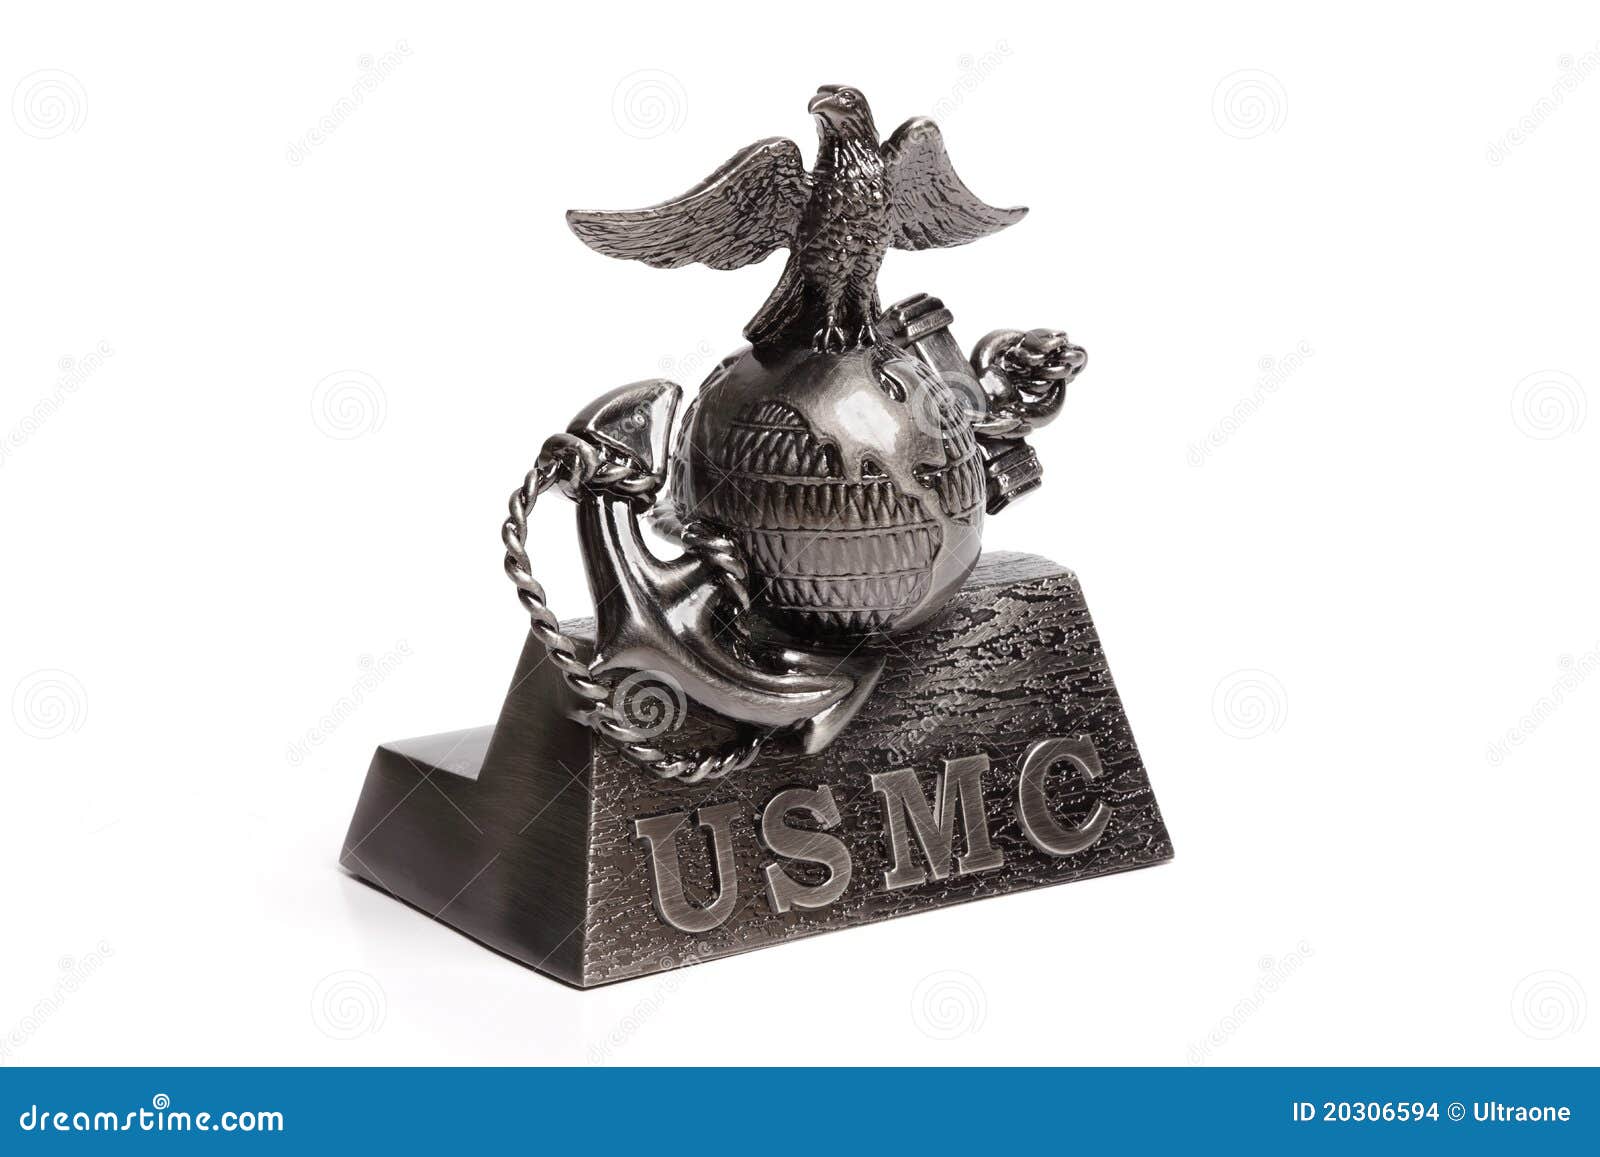 usmc (united states marine corps) 